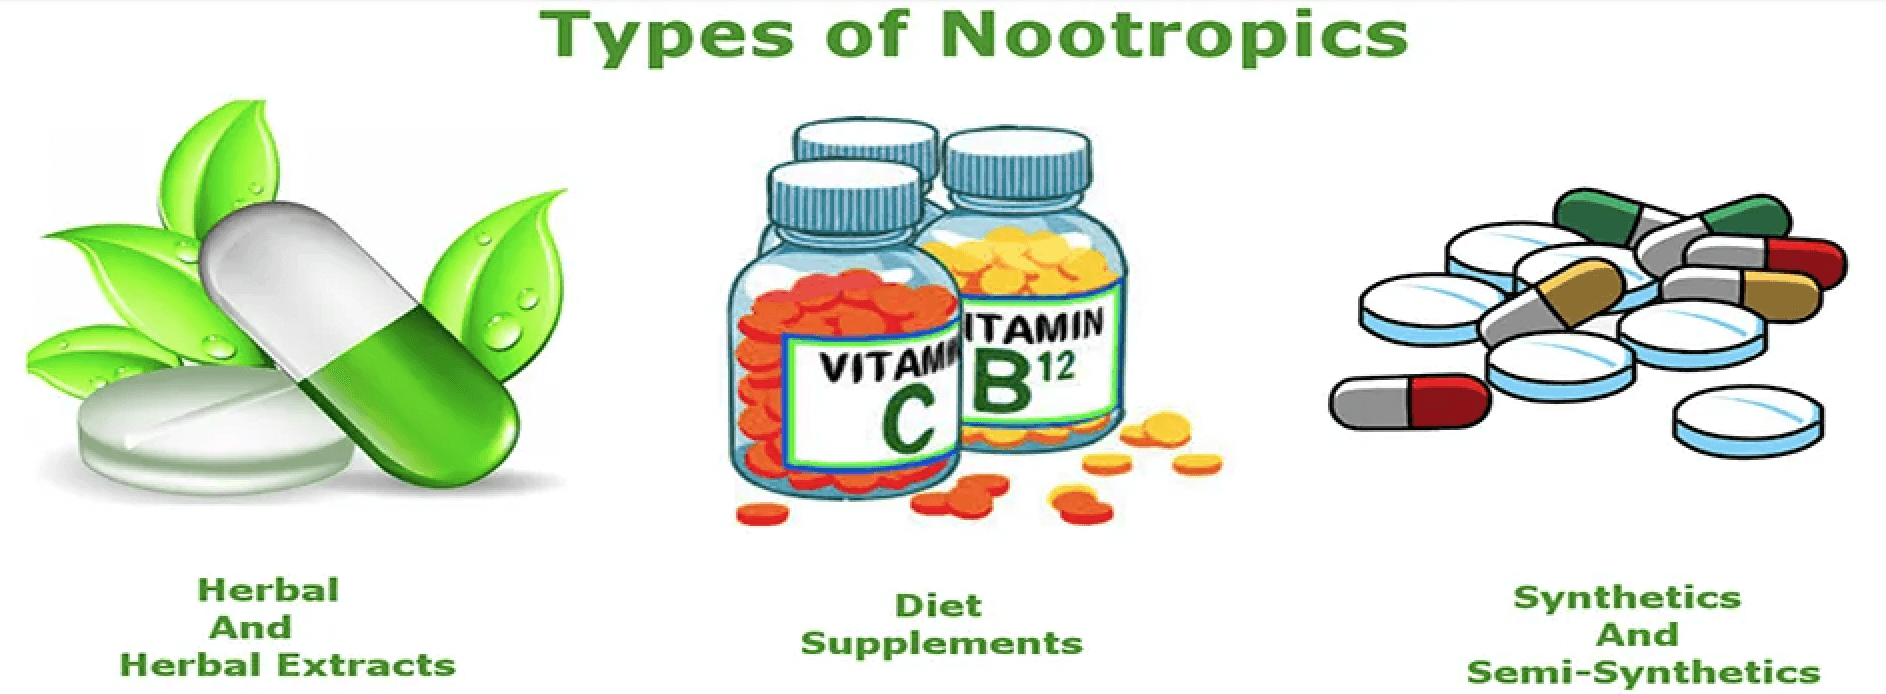 Benefits Of Nootropic Supplements - Health & Wellness